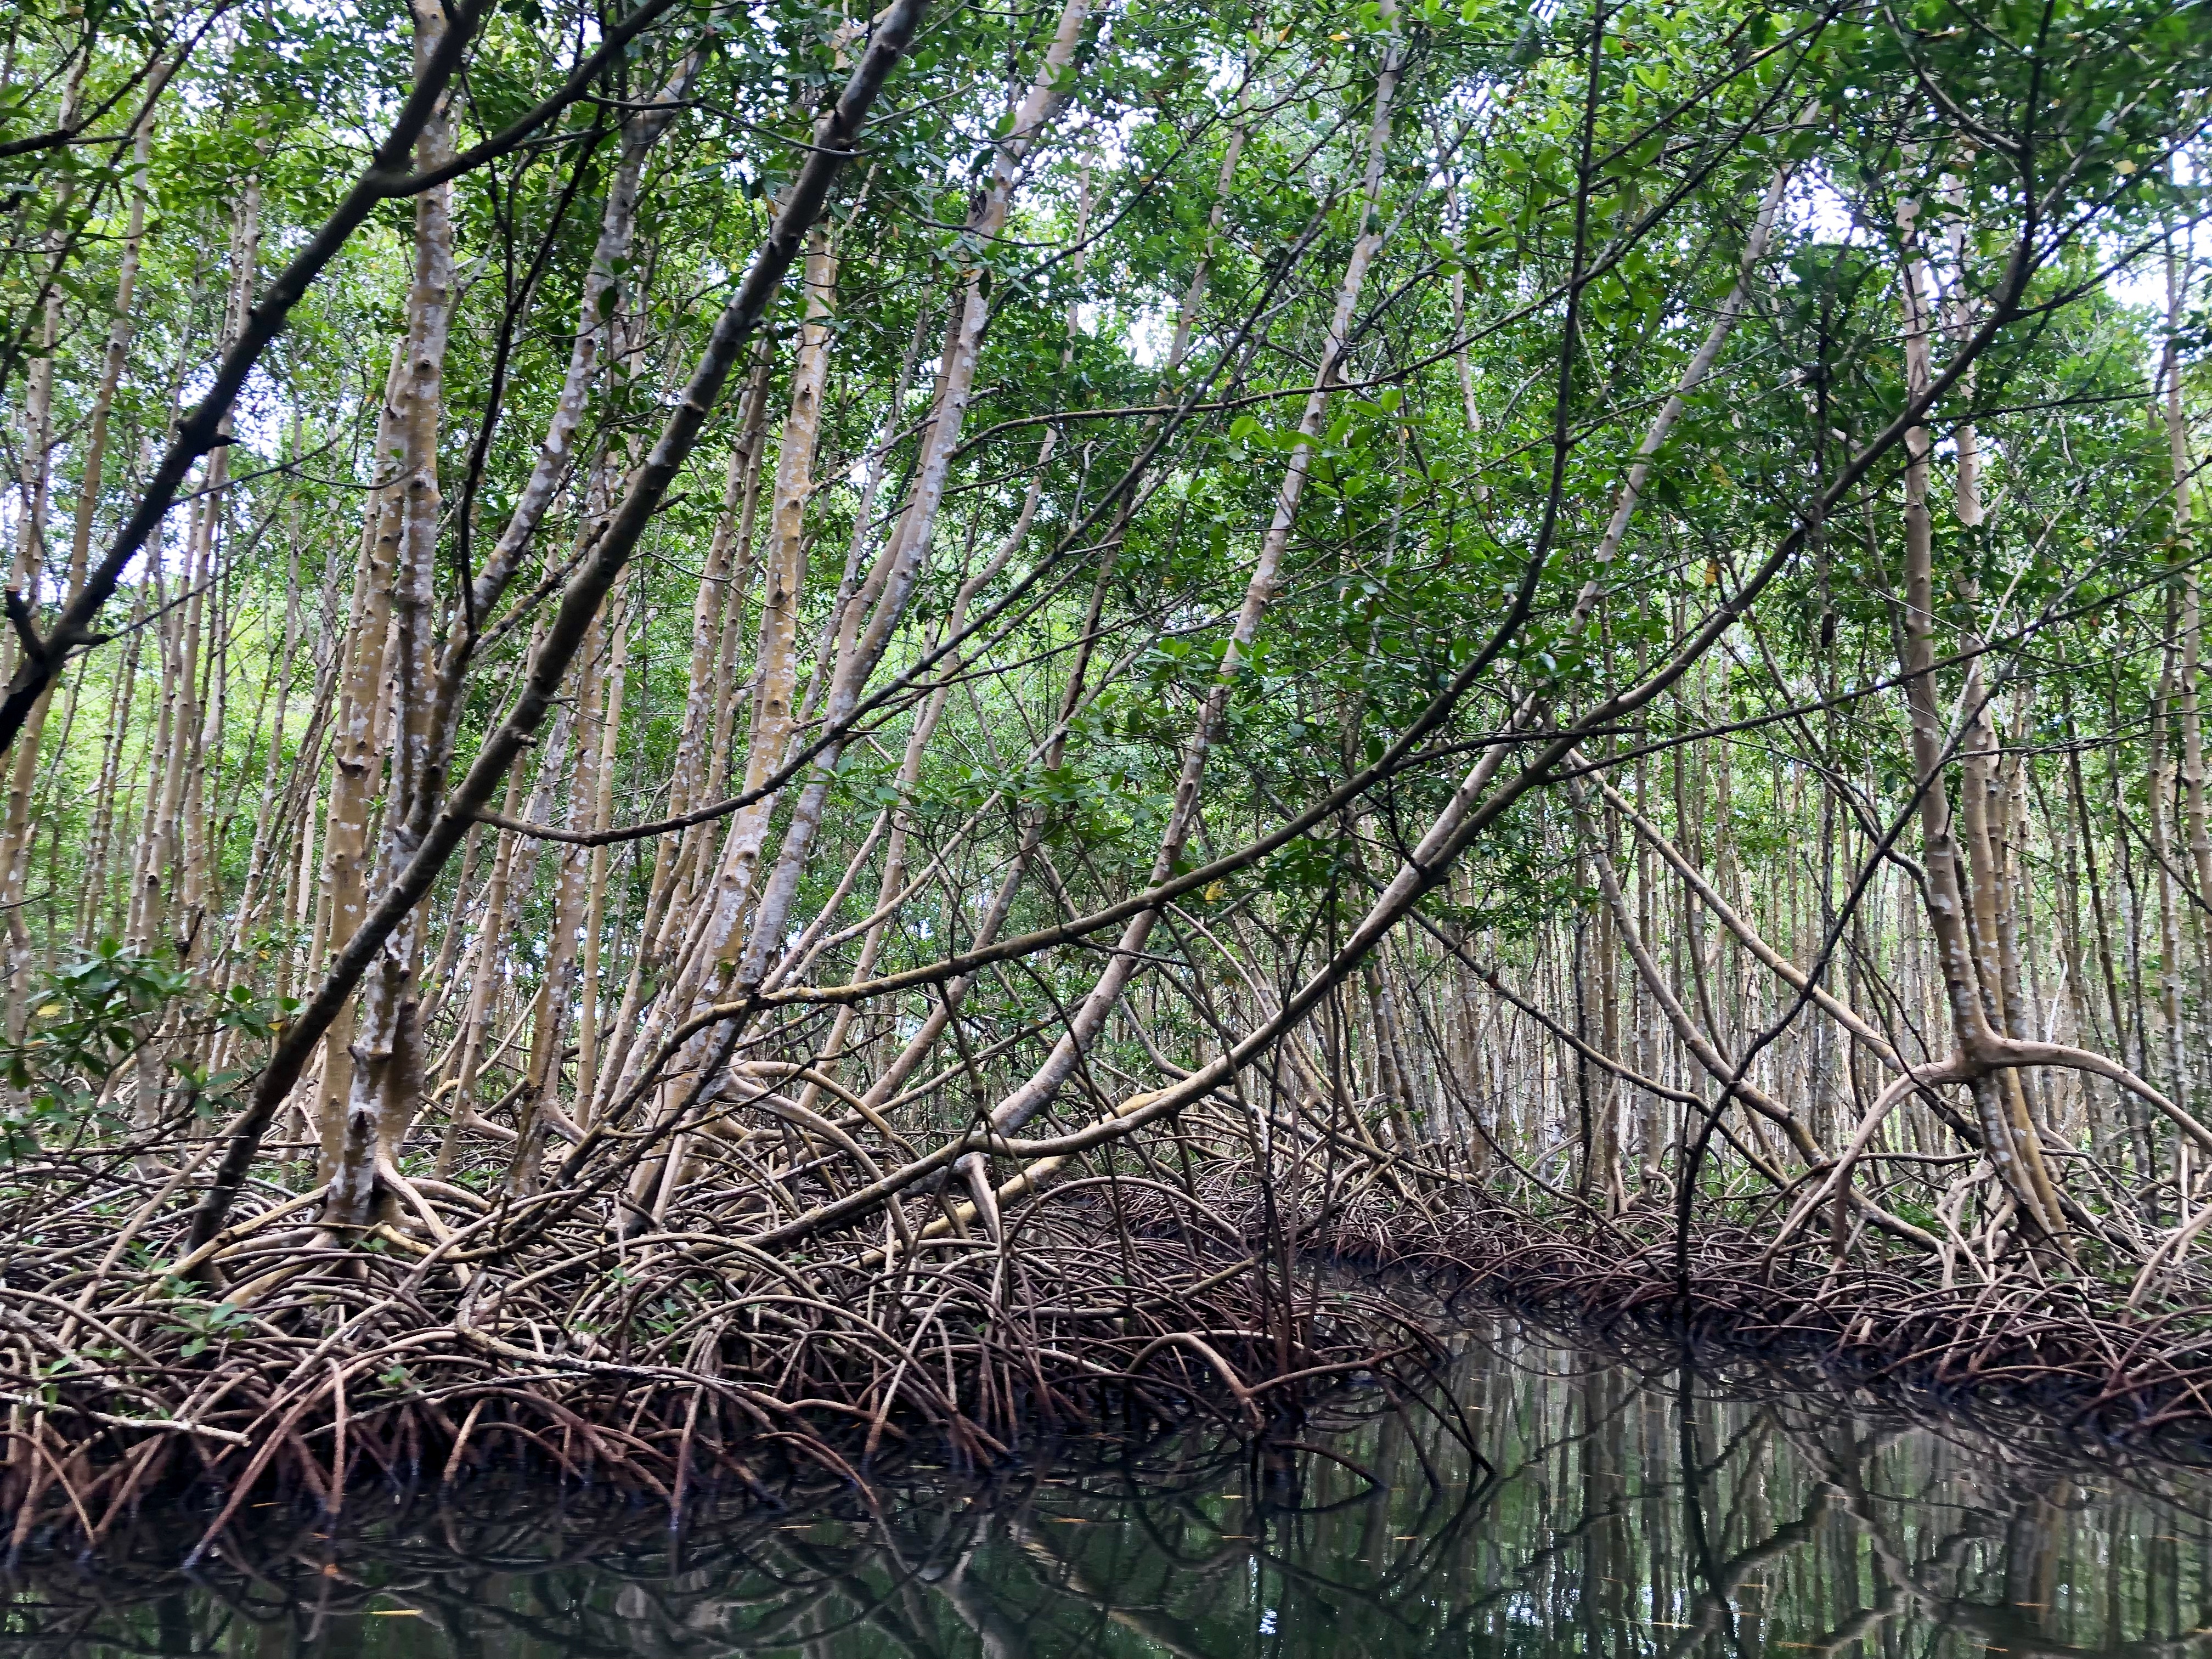     Le sauvetage des mangroves de Martinique retenu par la Fondation du Patrimoine parmi 12 projets 

